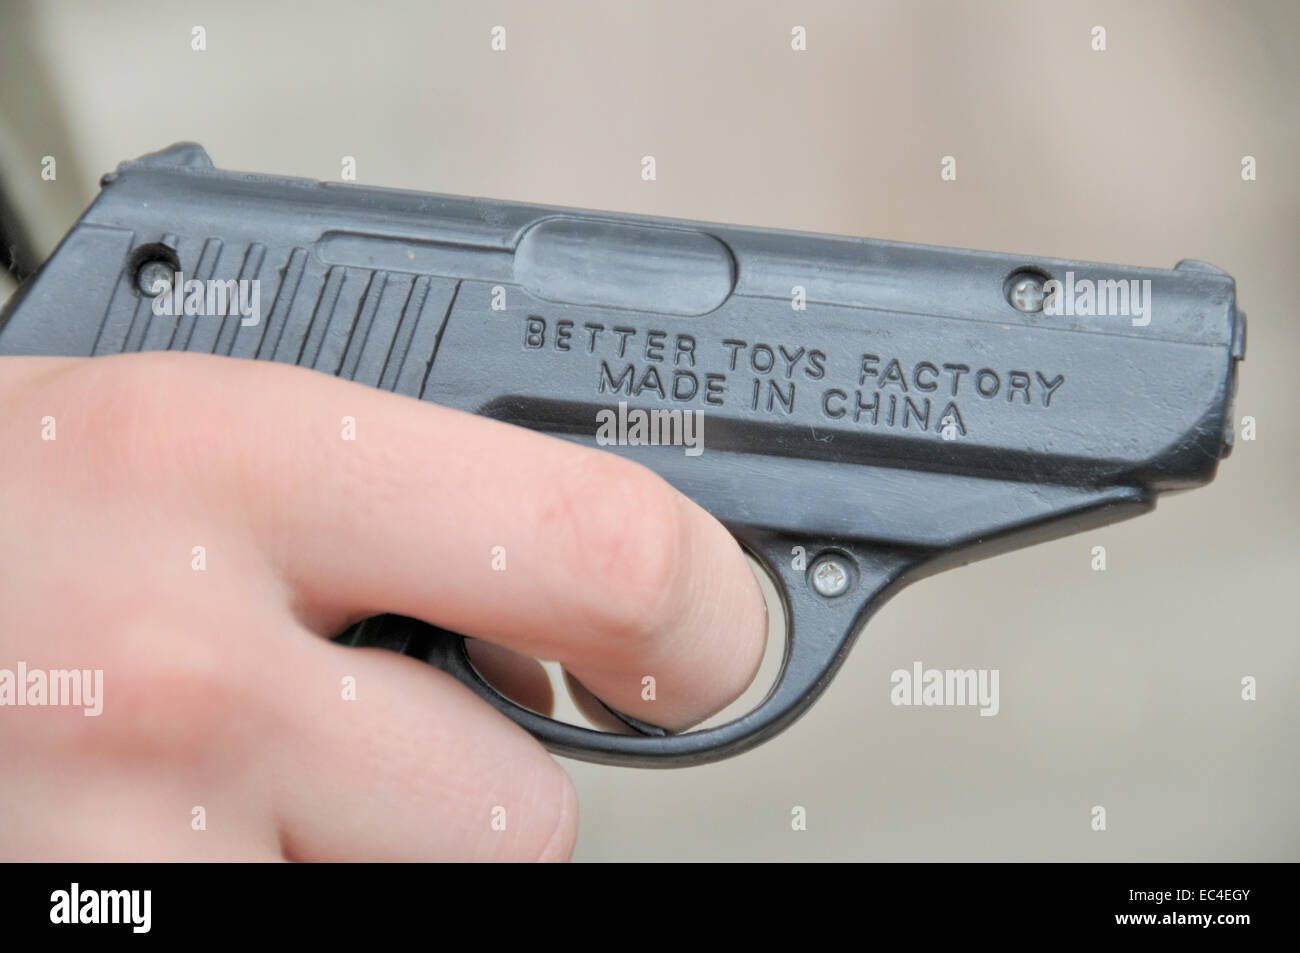 Fabbricato in Cina, plastica pistola giocattolo, Foto Stock